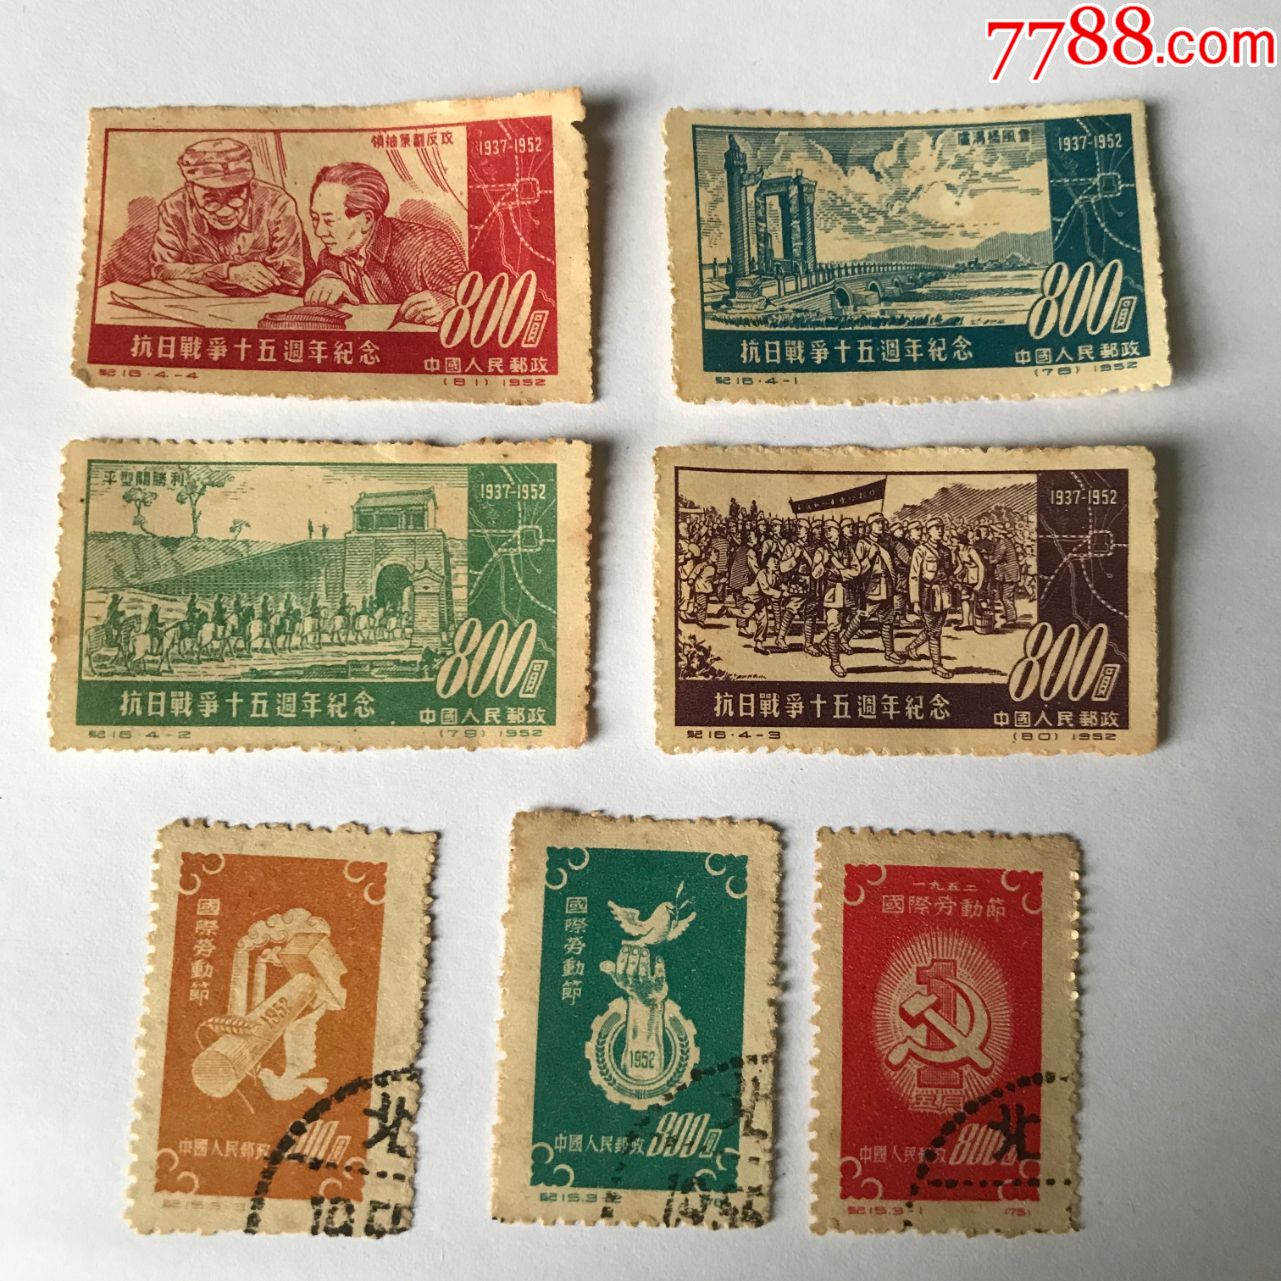 2007年的《丁亥年》邮票 - 中国邮政邮票博物馆